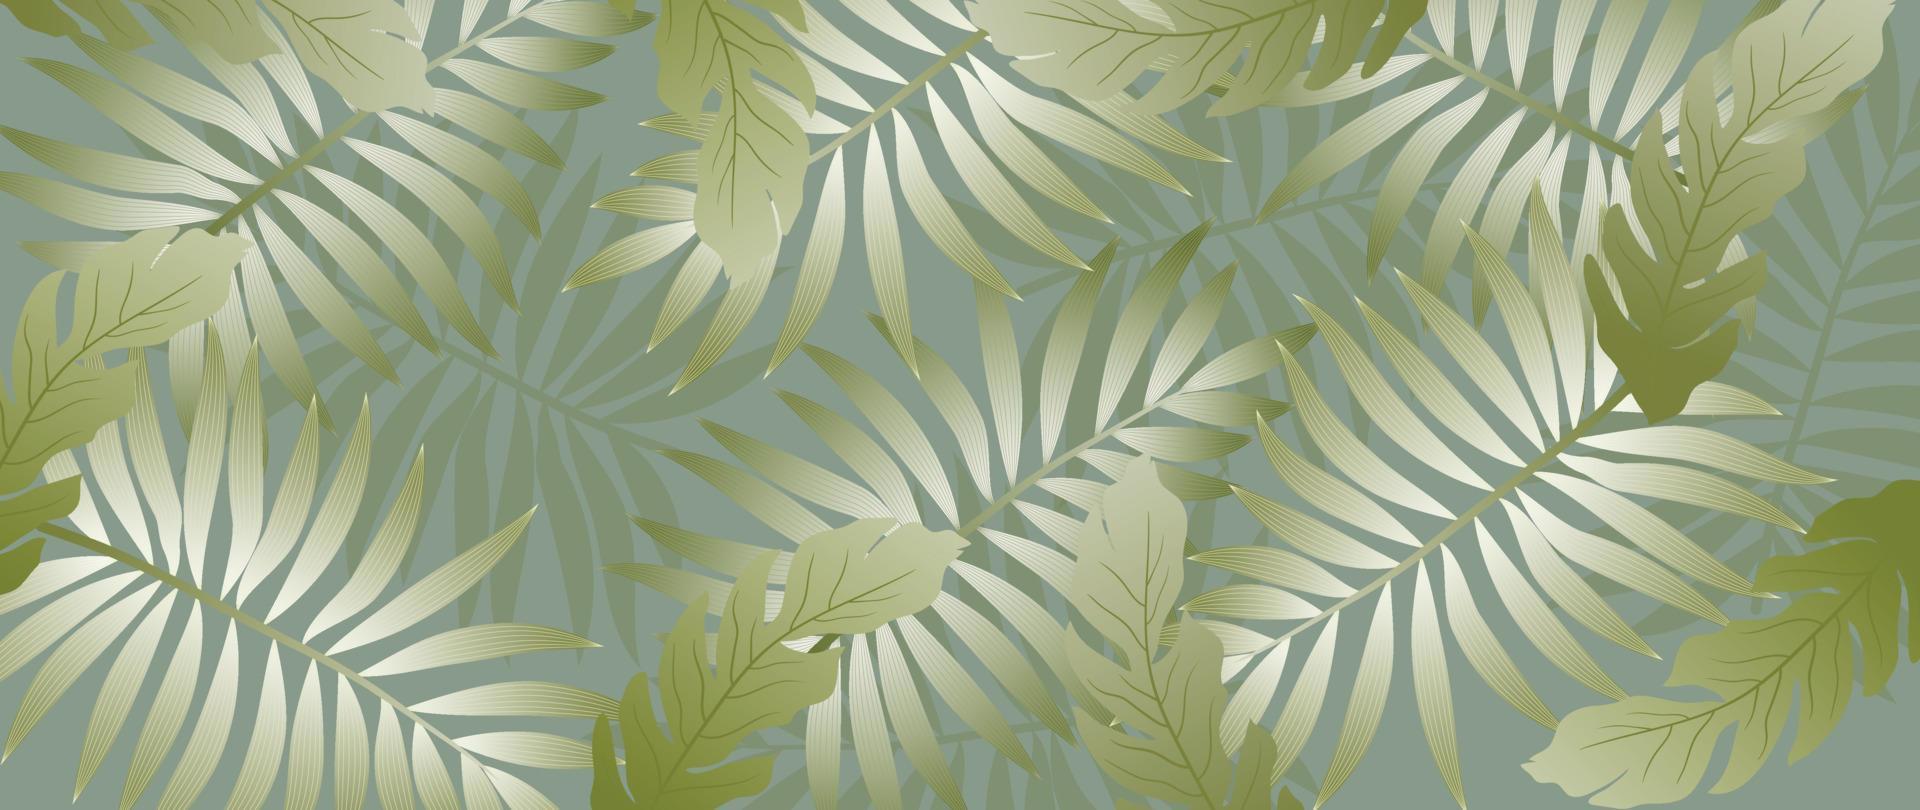 tropical hojas fondo de pantalla antecedentes vector. lujo natural selva palma hojas, elegante follaje diseño en minimalista degradado verde color estilo. diseño para tela, imprimir, cubrir, bandera, decoración. vector